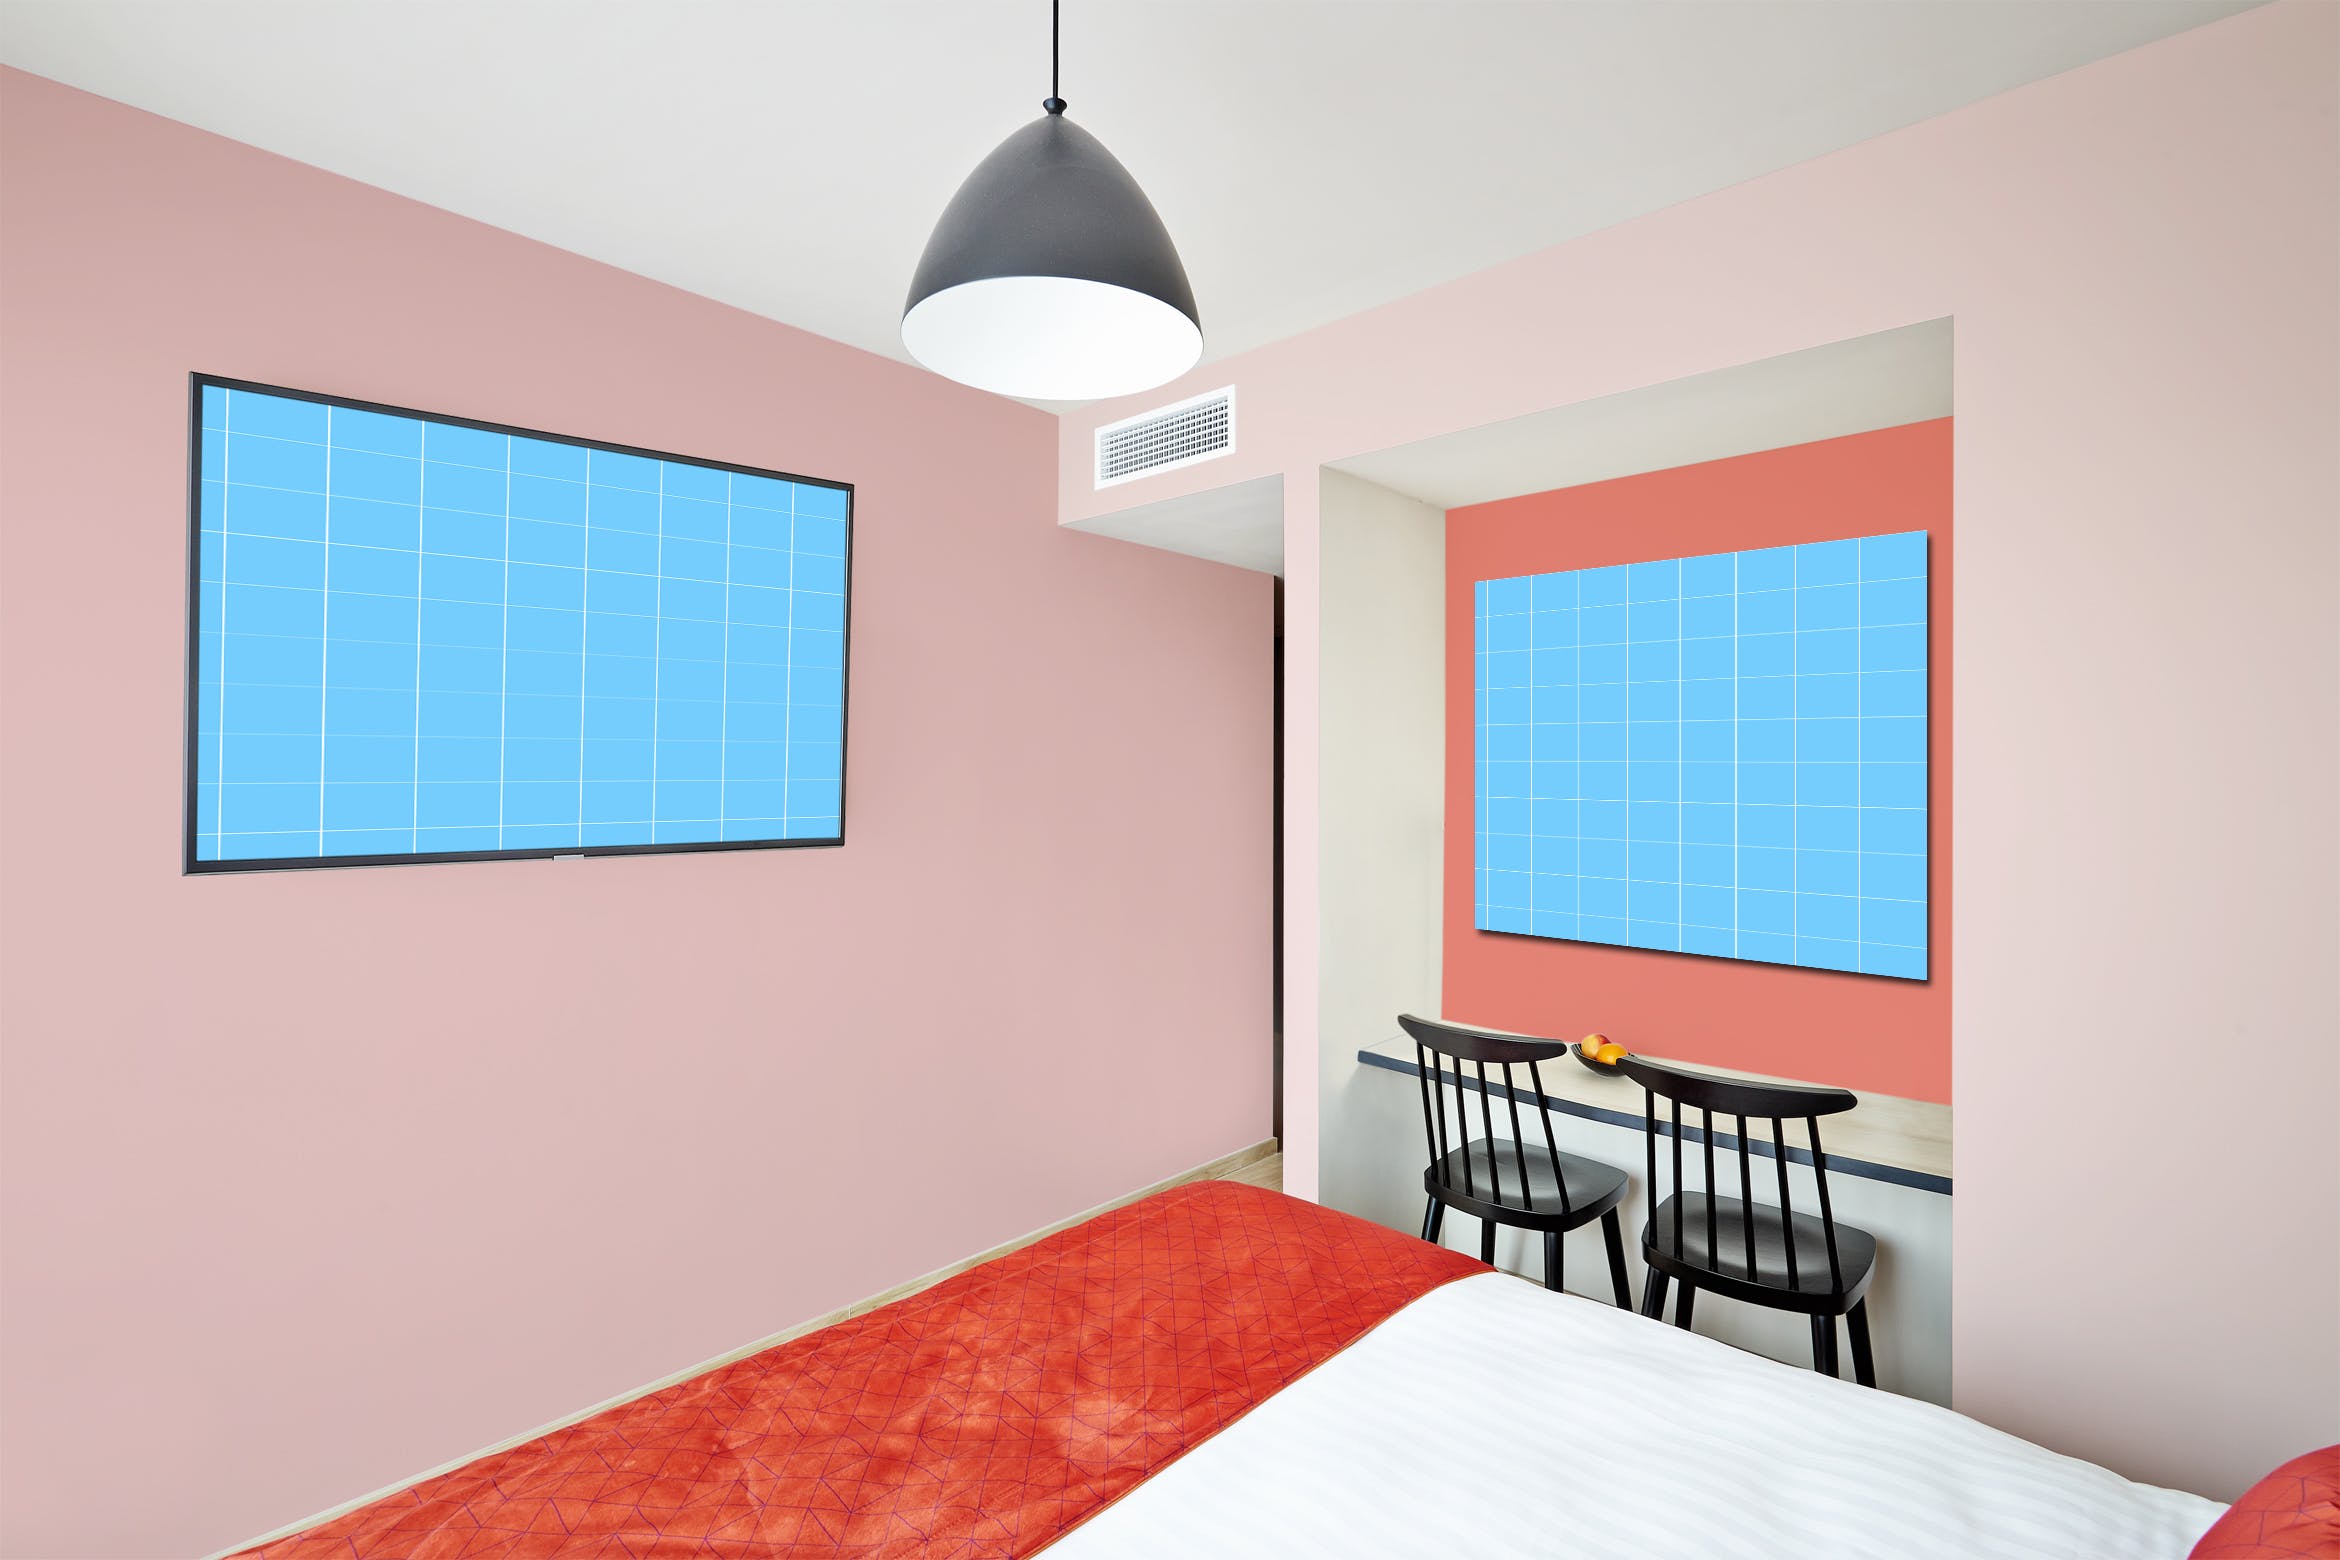 酒店房间装饰画框样机素材库精选模板v01 Hotel-Room-01-Mockup插图